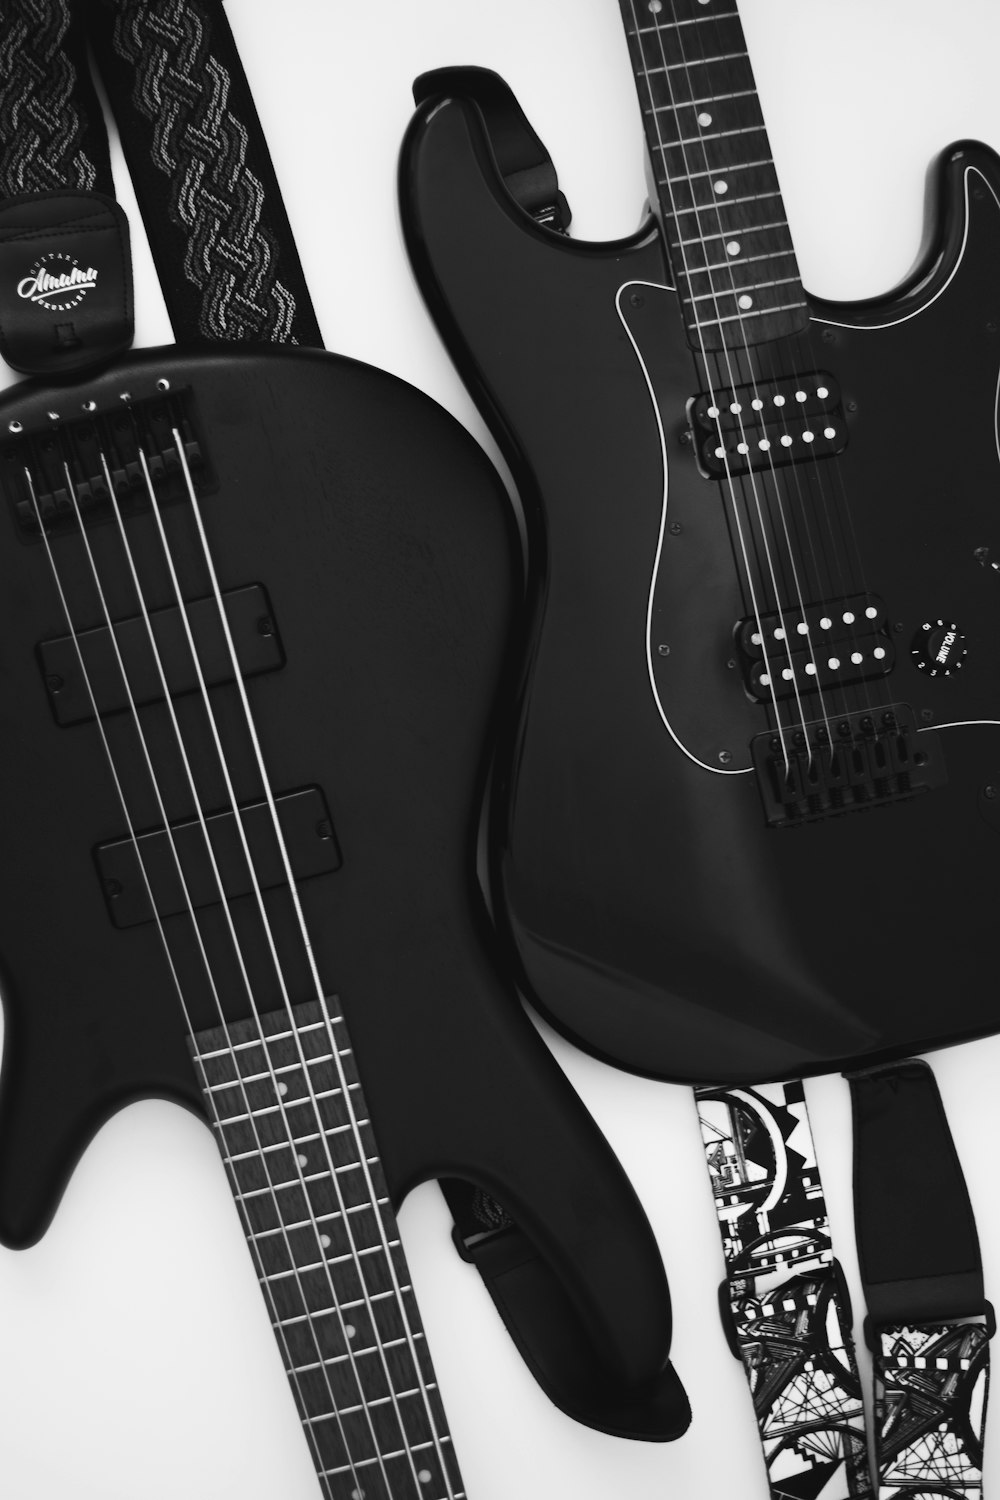 Photo en niveaux de gris de guitares électriques